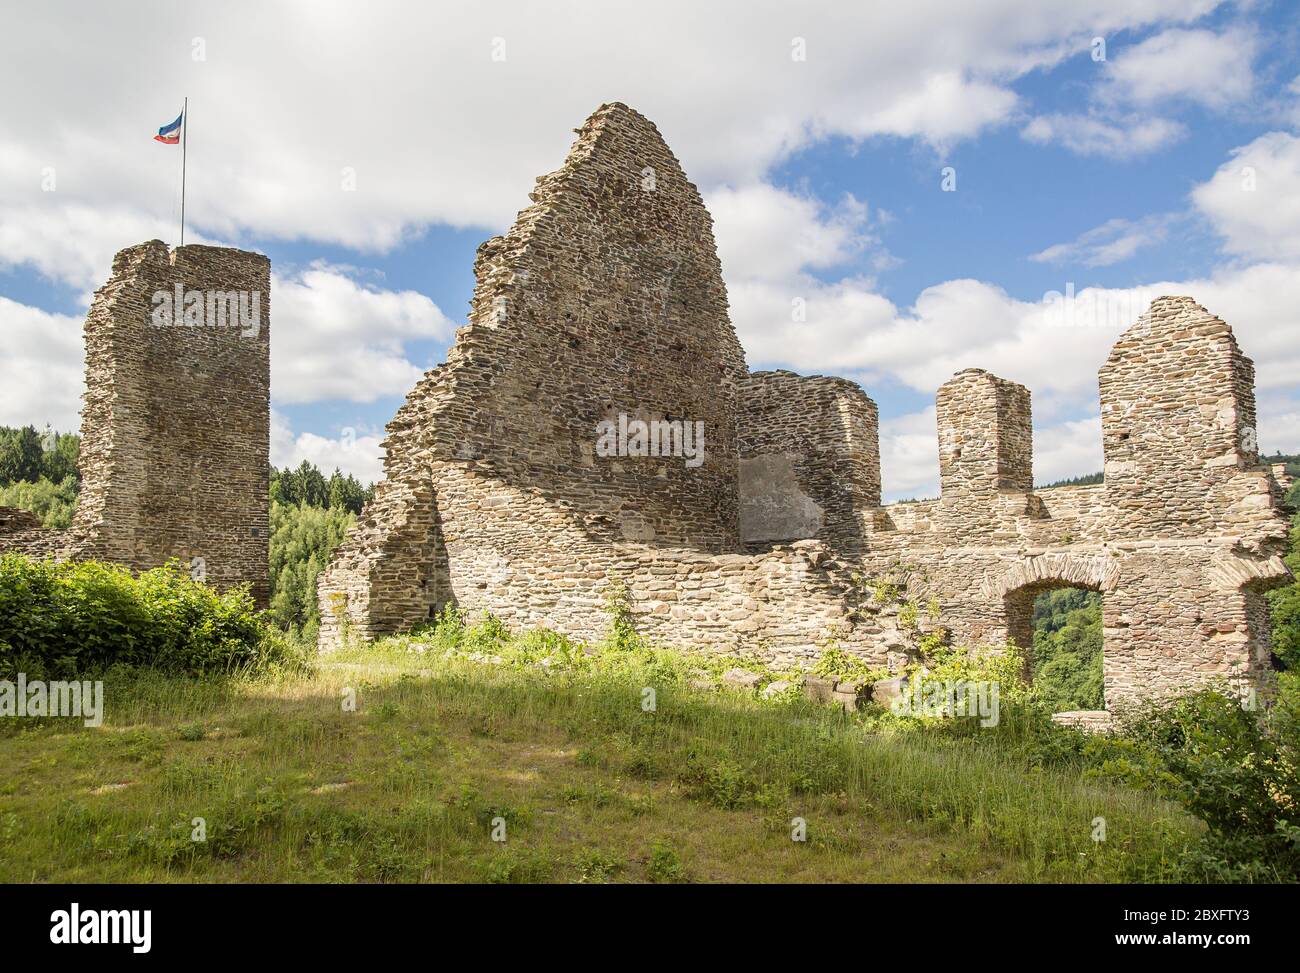 Les ruines d'un château médiéval, illuminé par le soleil, un jour d'été légèrement nuageux. Drapeaux en haut. Banque D'Images